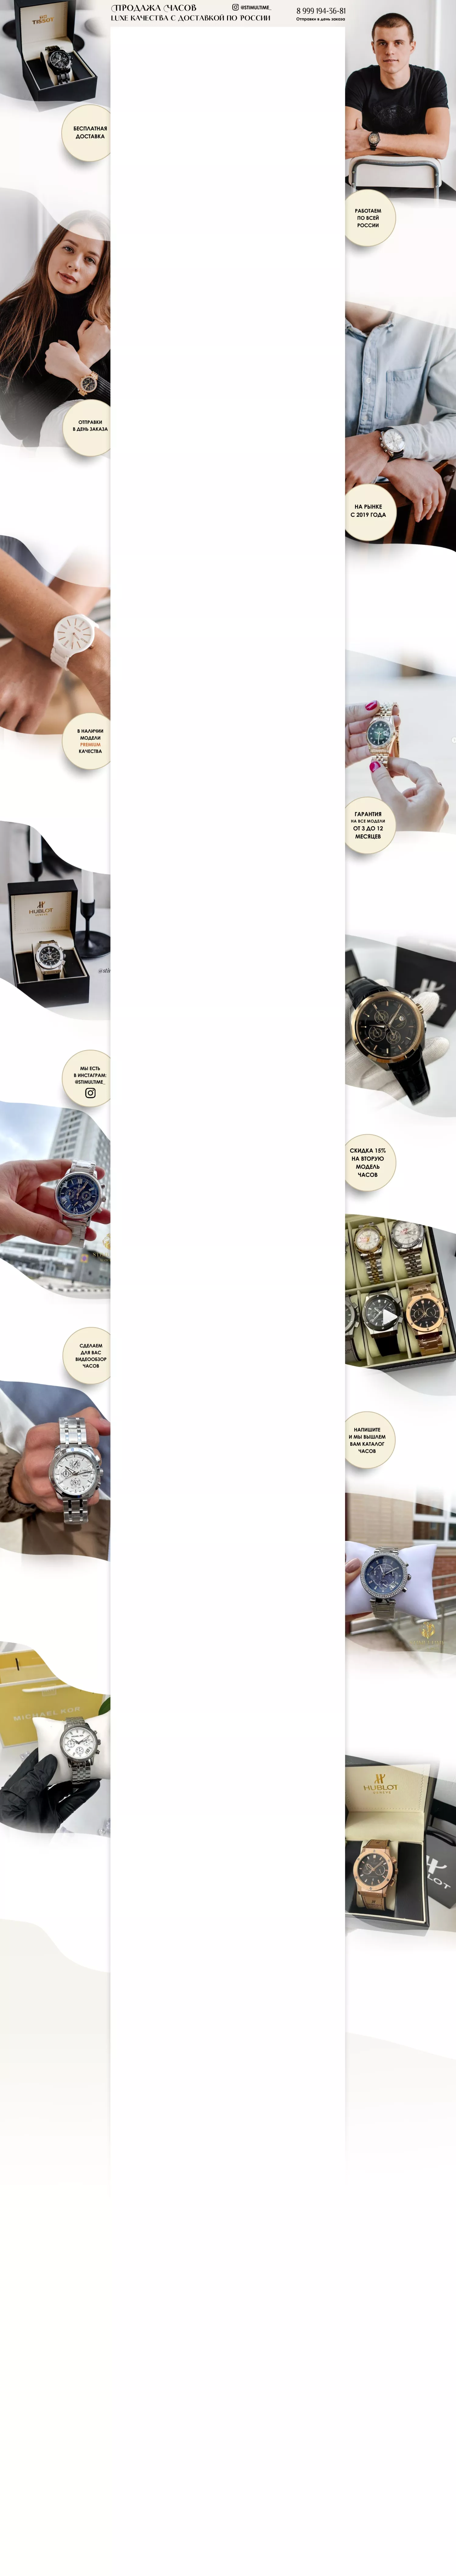 Фон для Авито магазина на тему продажи часов Люкс качества